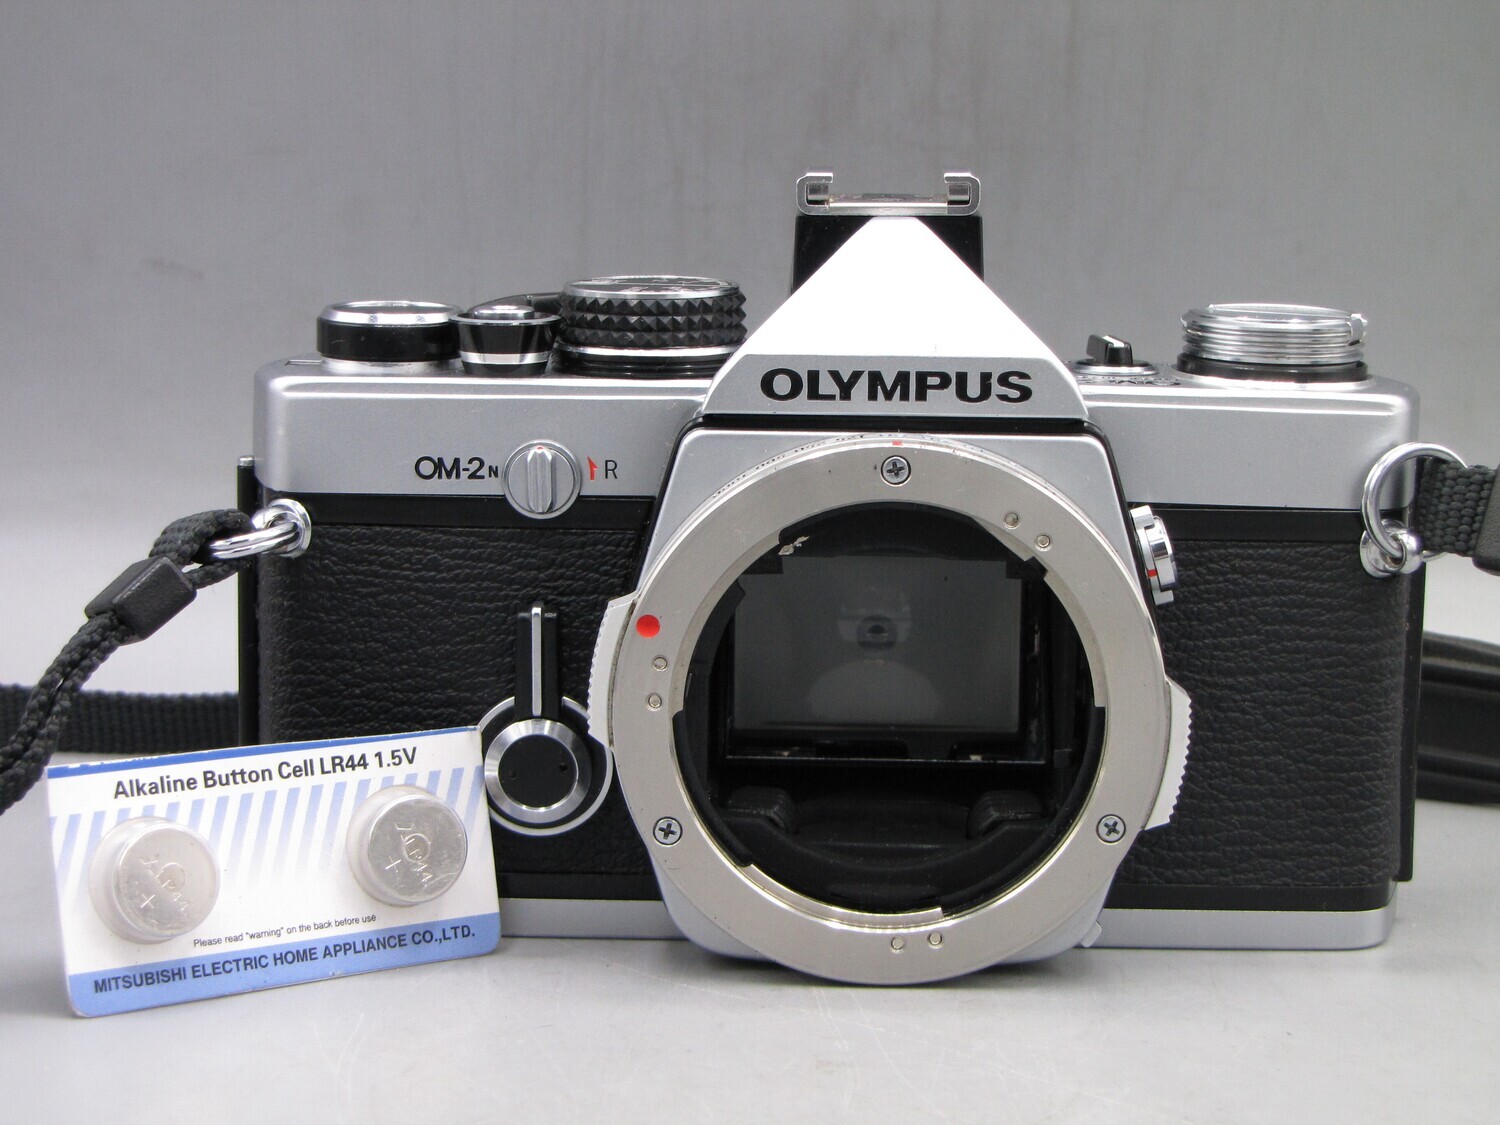 Olympus OM2n 35mm SLR Camera Body Clad Seals Battery Tested